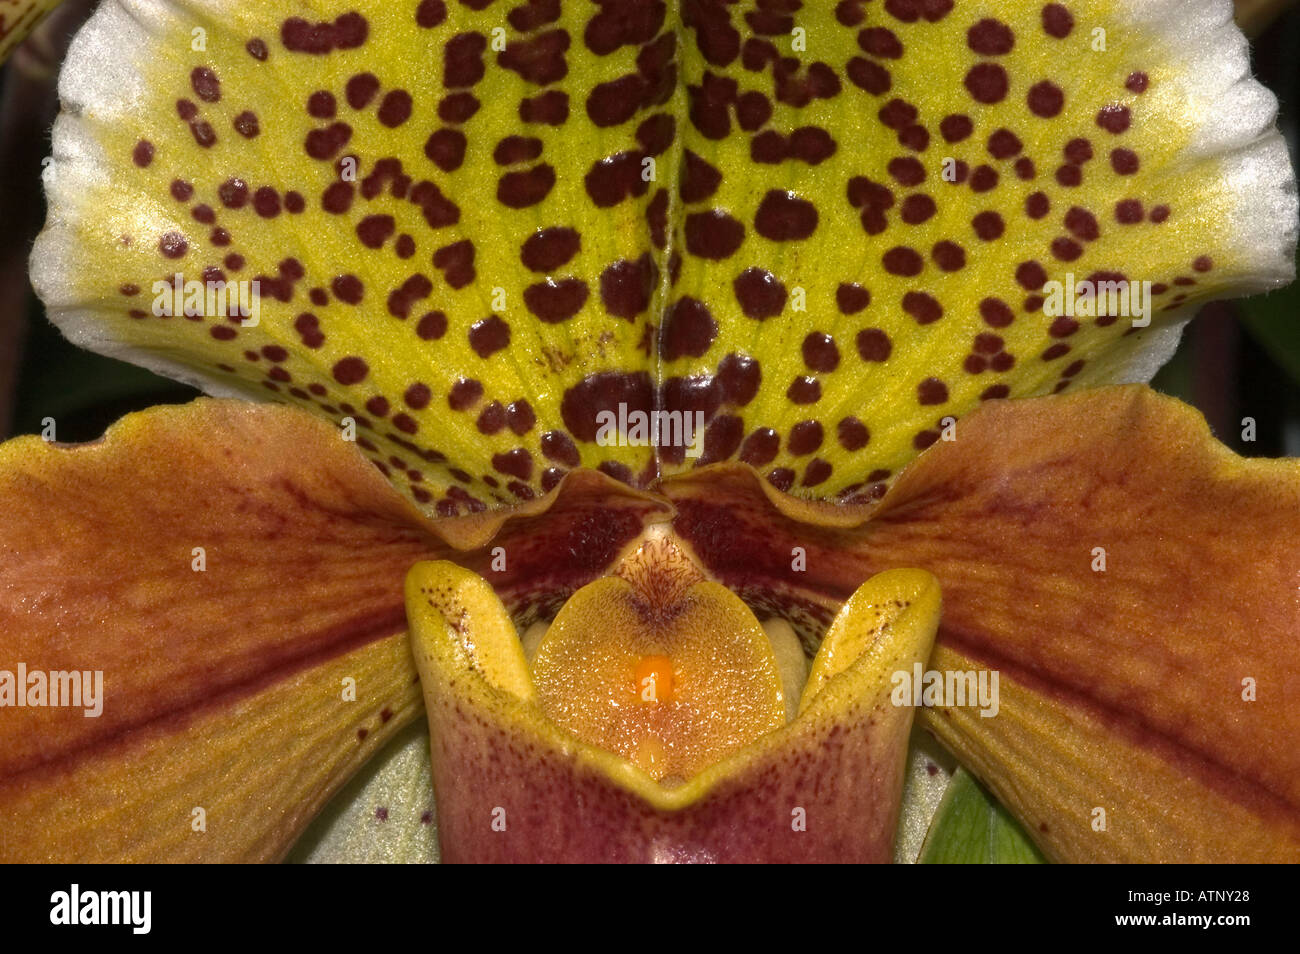 ORCHID (Paphiopedilum insigne) Wild  species. Close-up detail Stock Photo